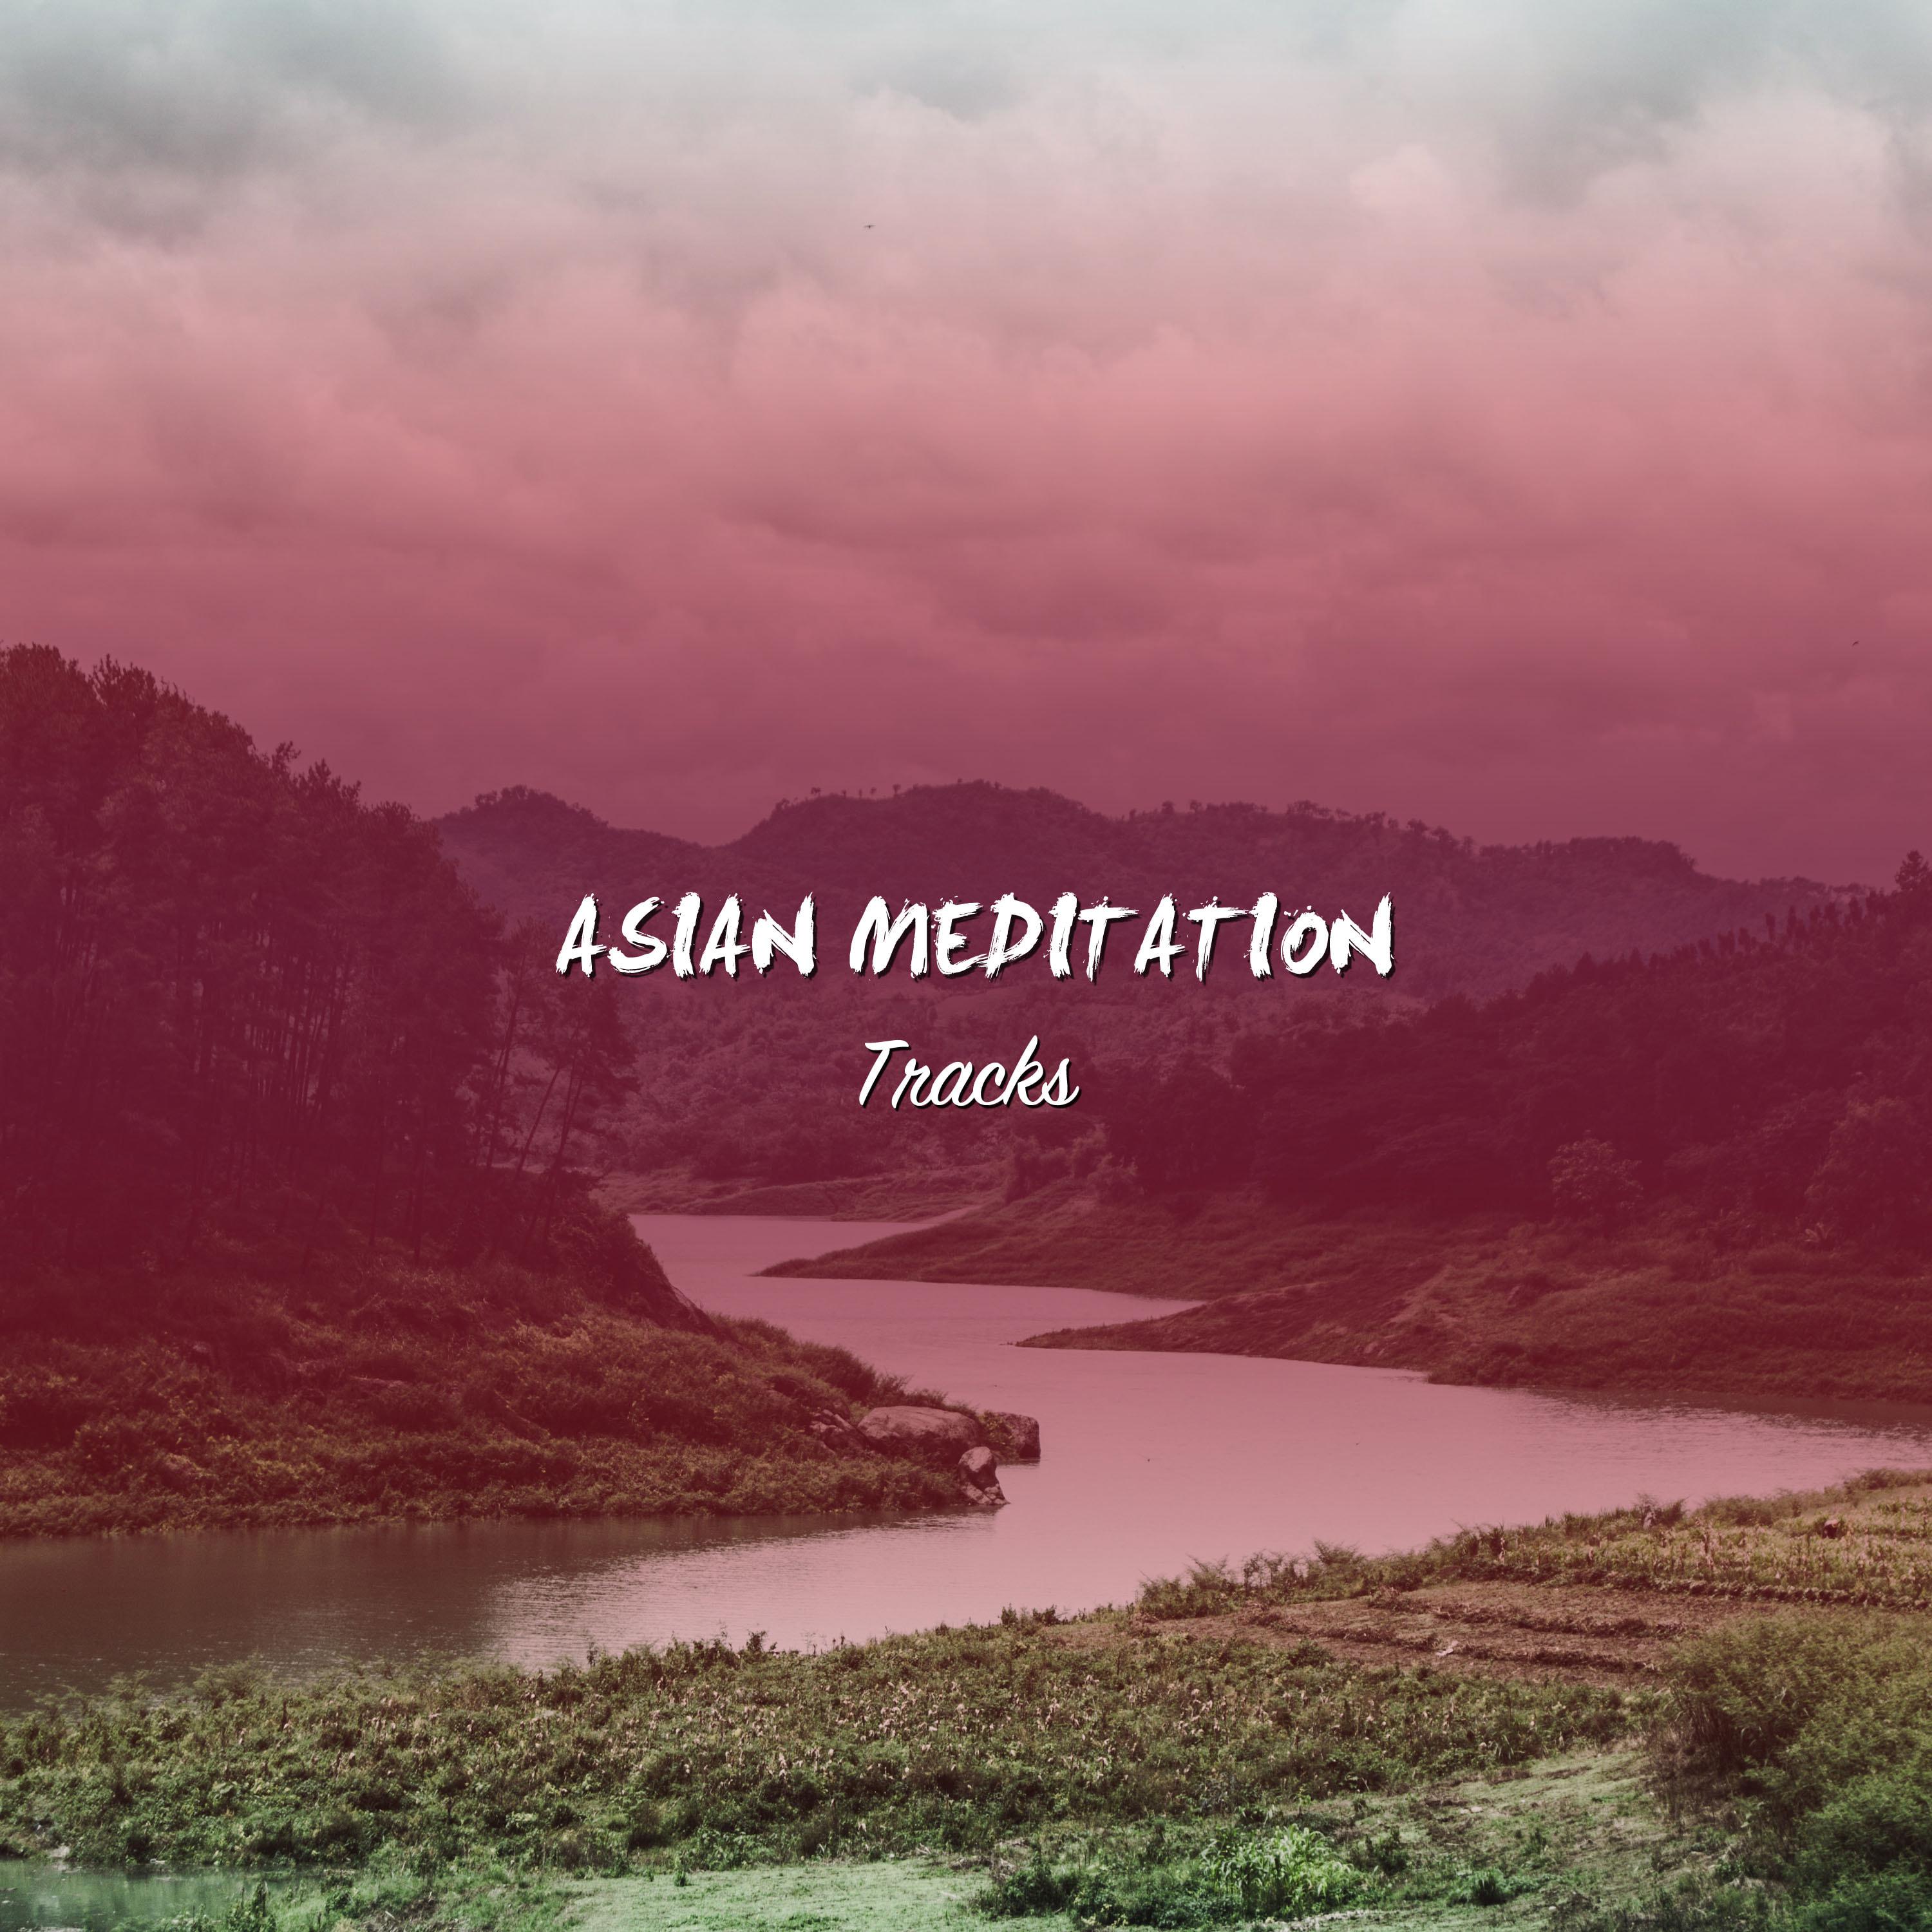 17 Pistas de Meditacio n Asia ticas para el Rejuvenecimiento